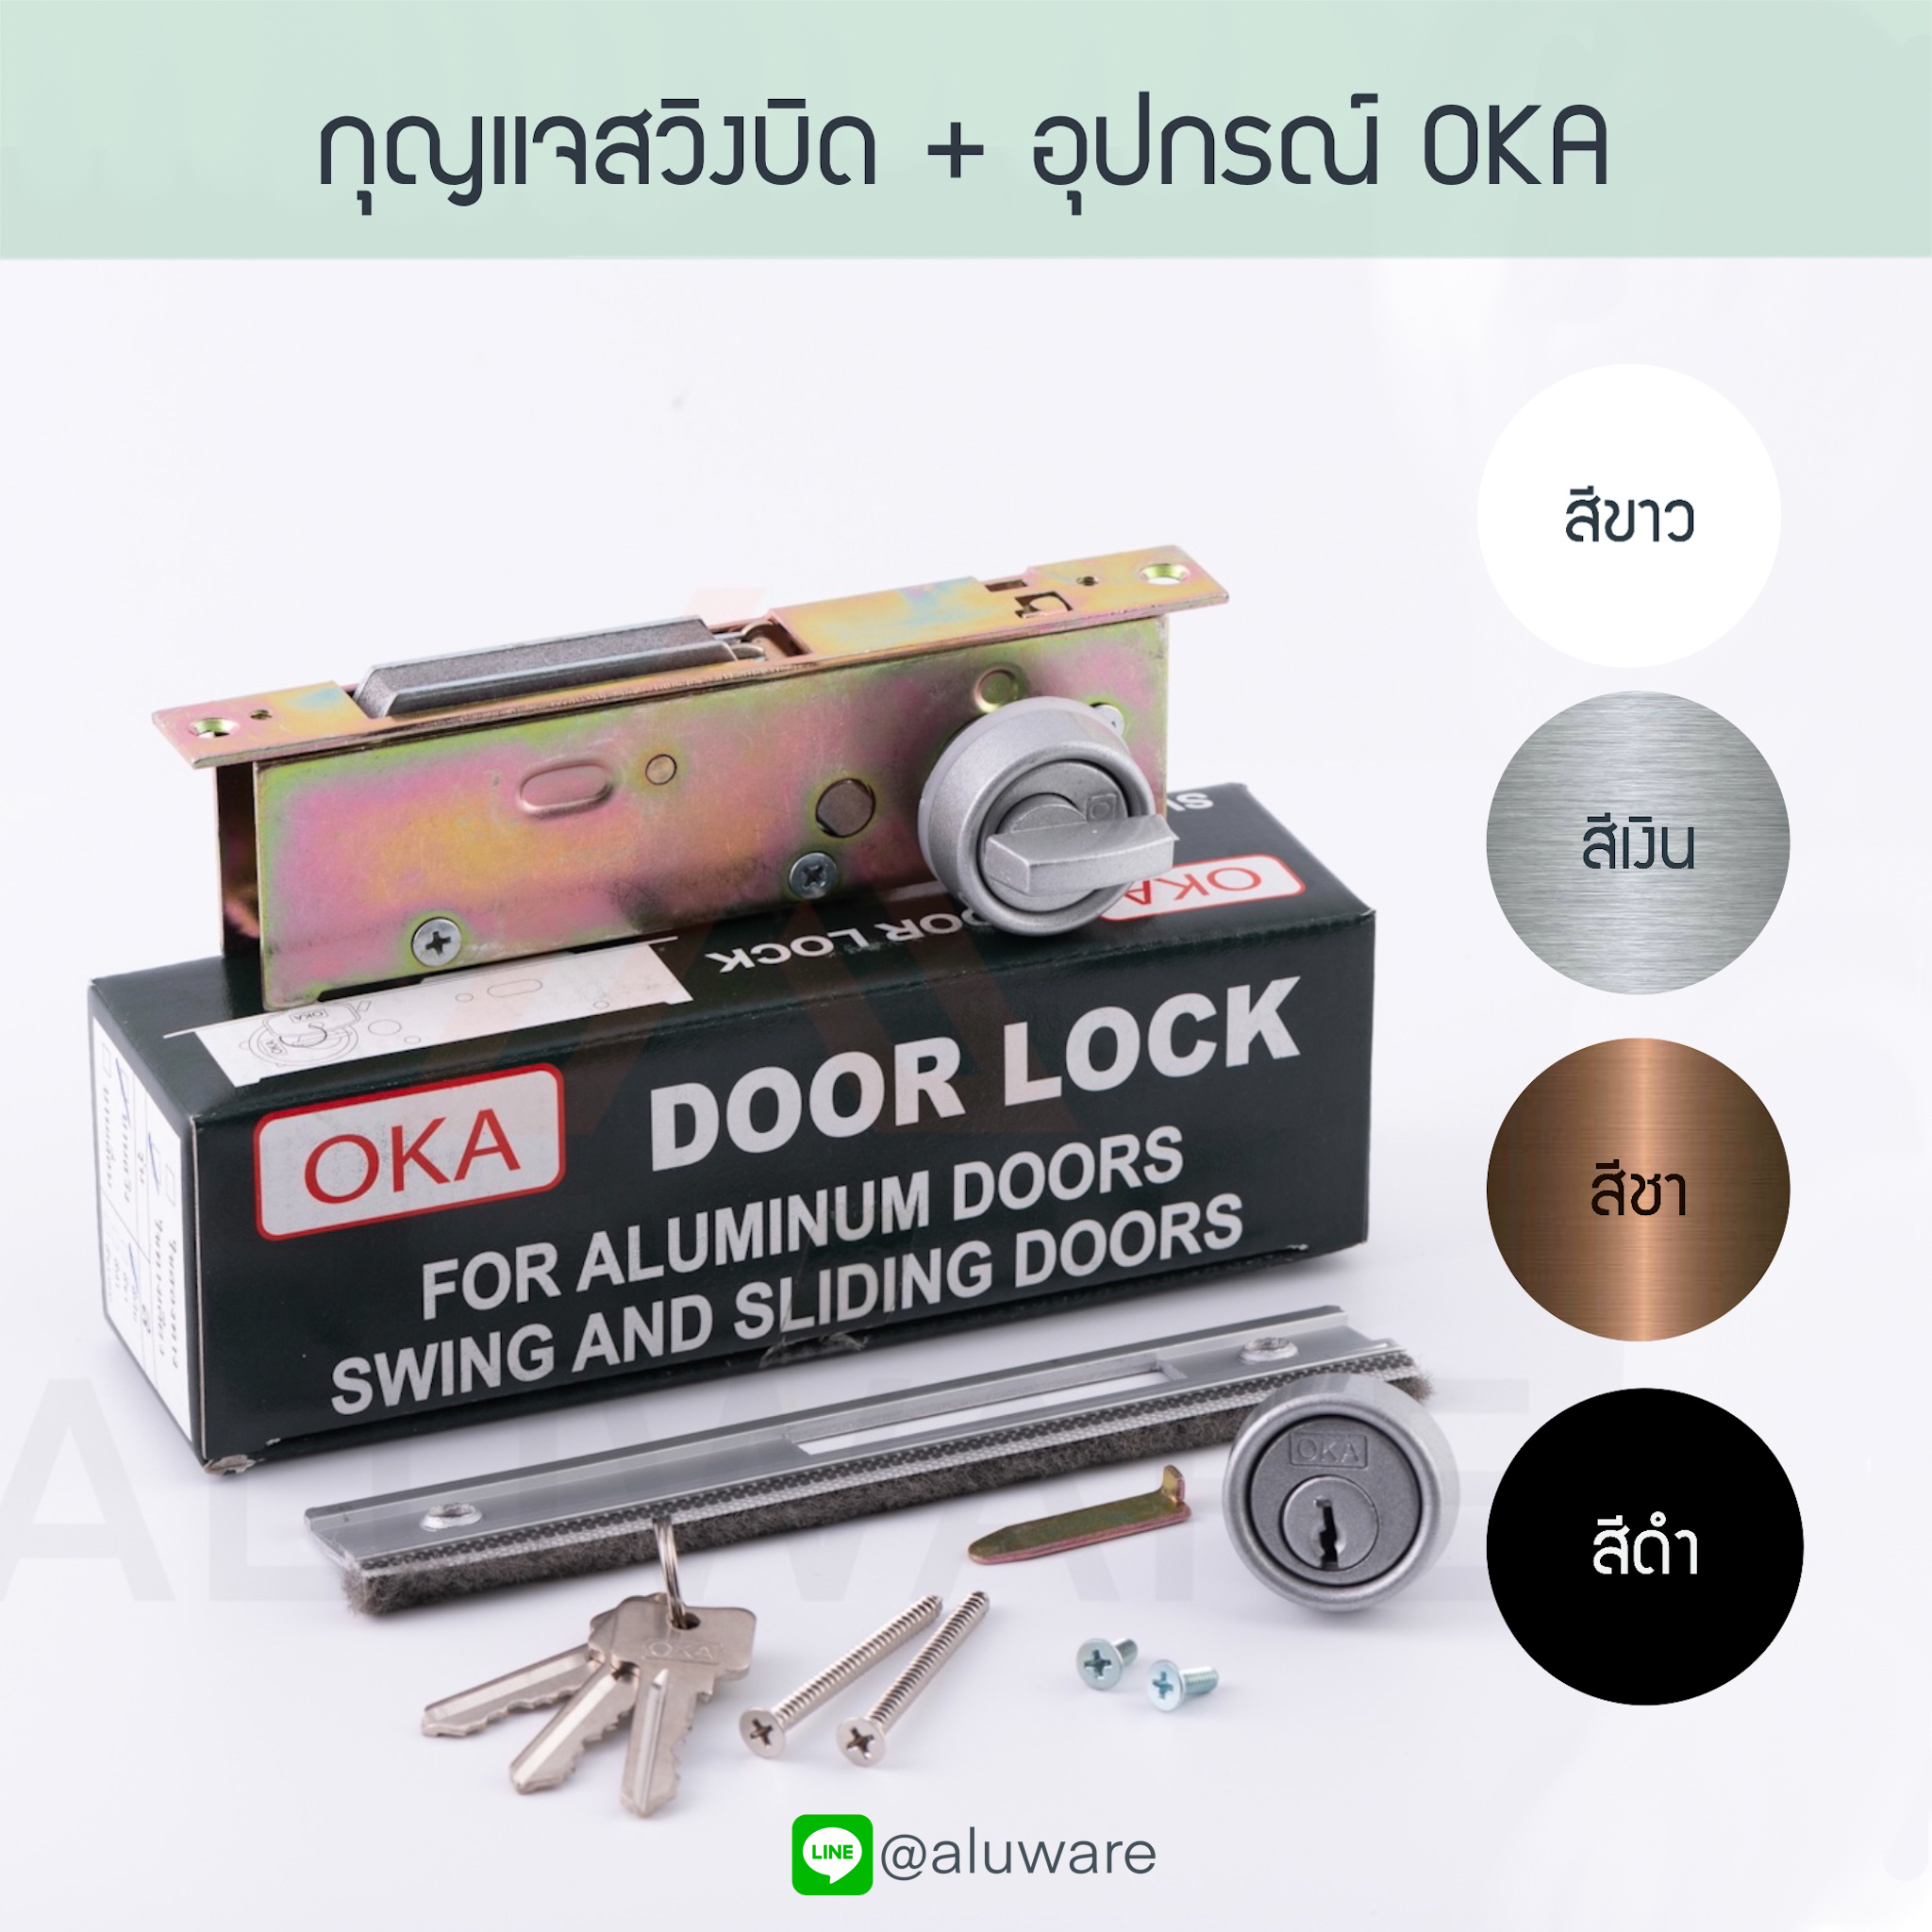 กุญแจสวิงบิด + อุปกรณ์ OKA ( อบขาว เงิน ชา ดำ ) กุญแจสวิง ประตูบานสวิง ล็อค ล็อก บานสวิง ประตูบานสวิง ประตู สวิงบิด ขอบิด เลื่อนบิด Aluware AW018-3